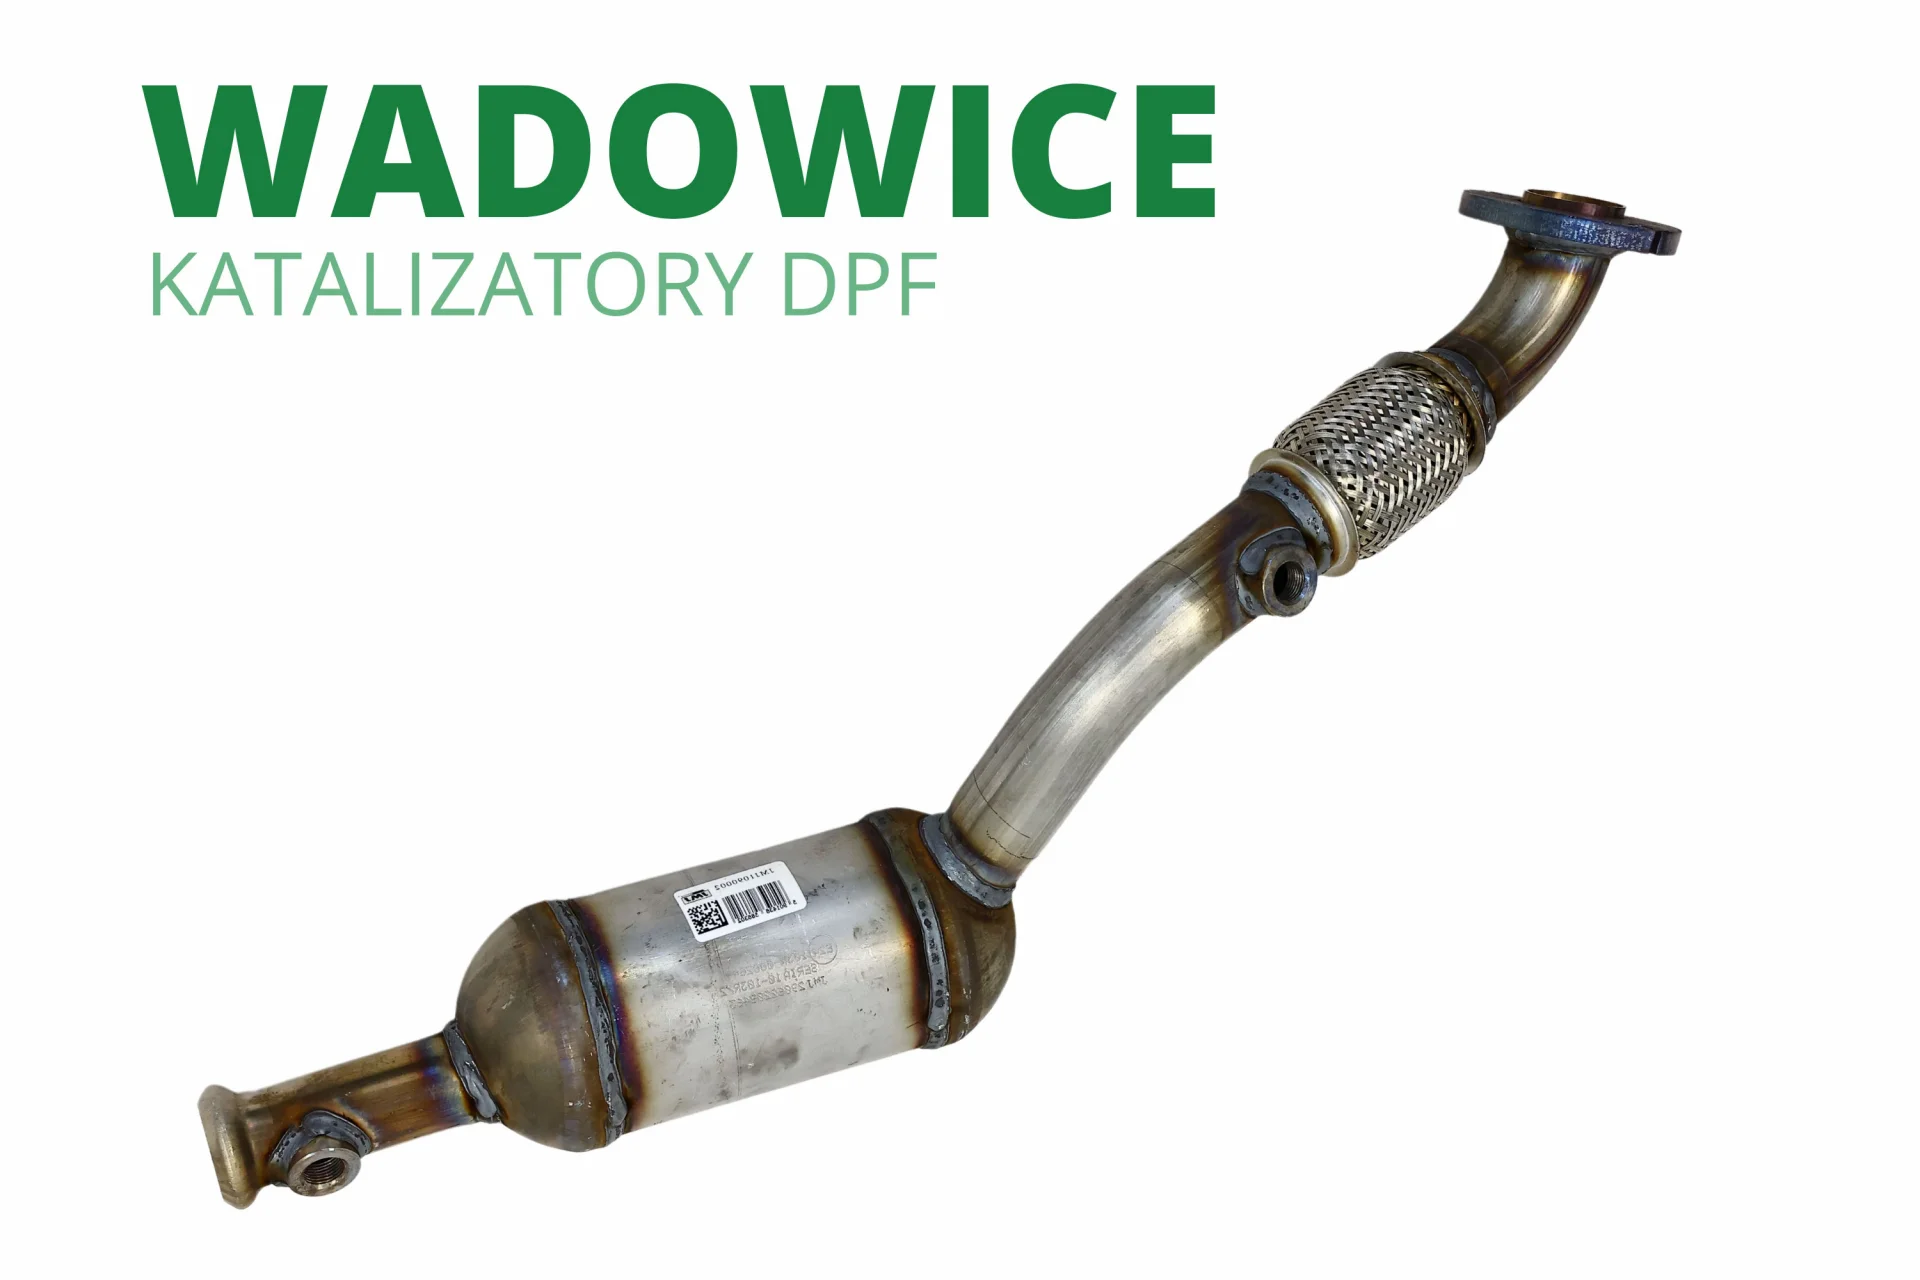 Katalizatory DPF FAP SCR Wadowice nowy cena